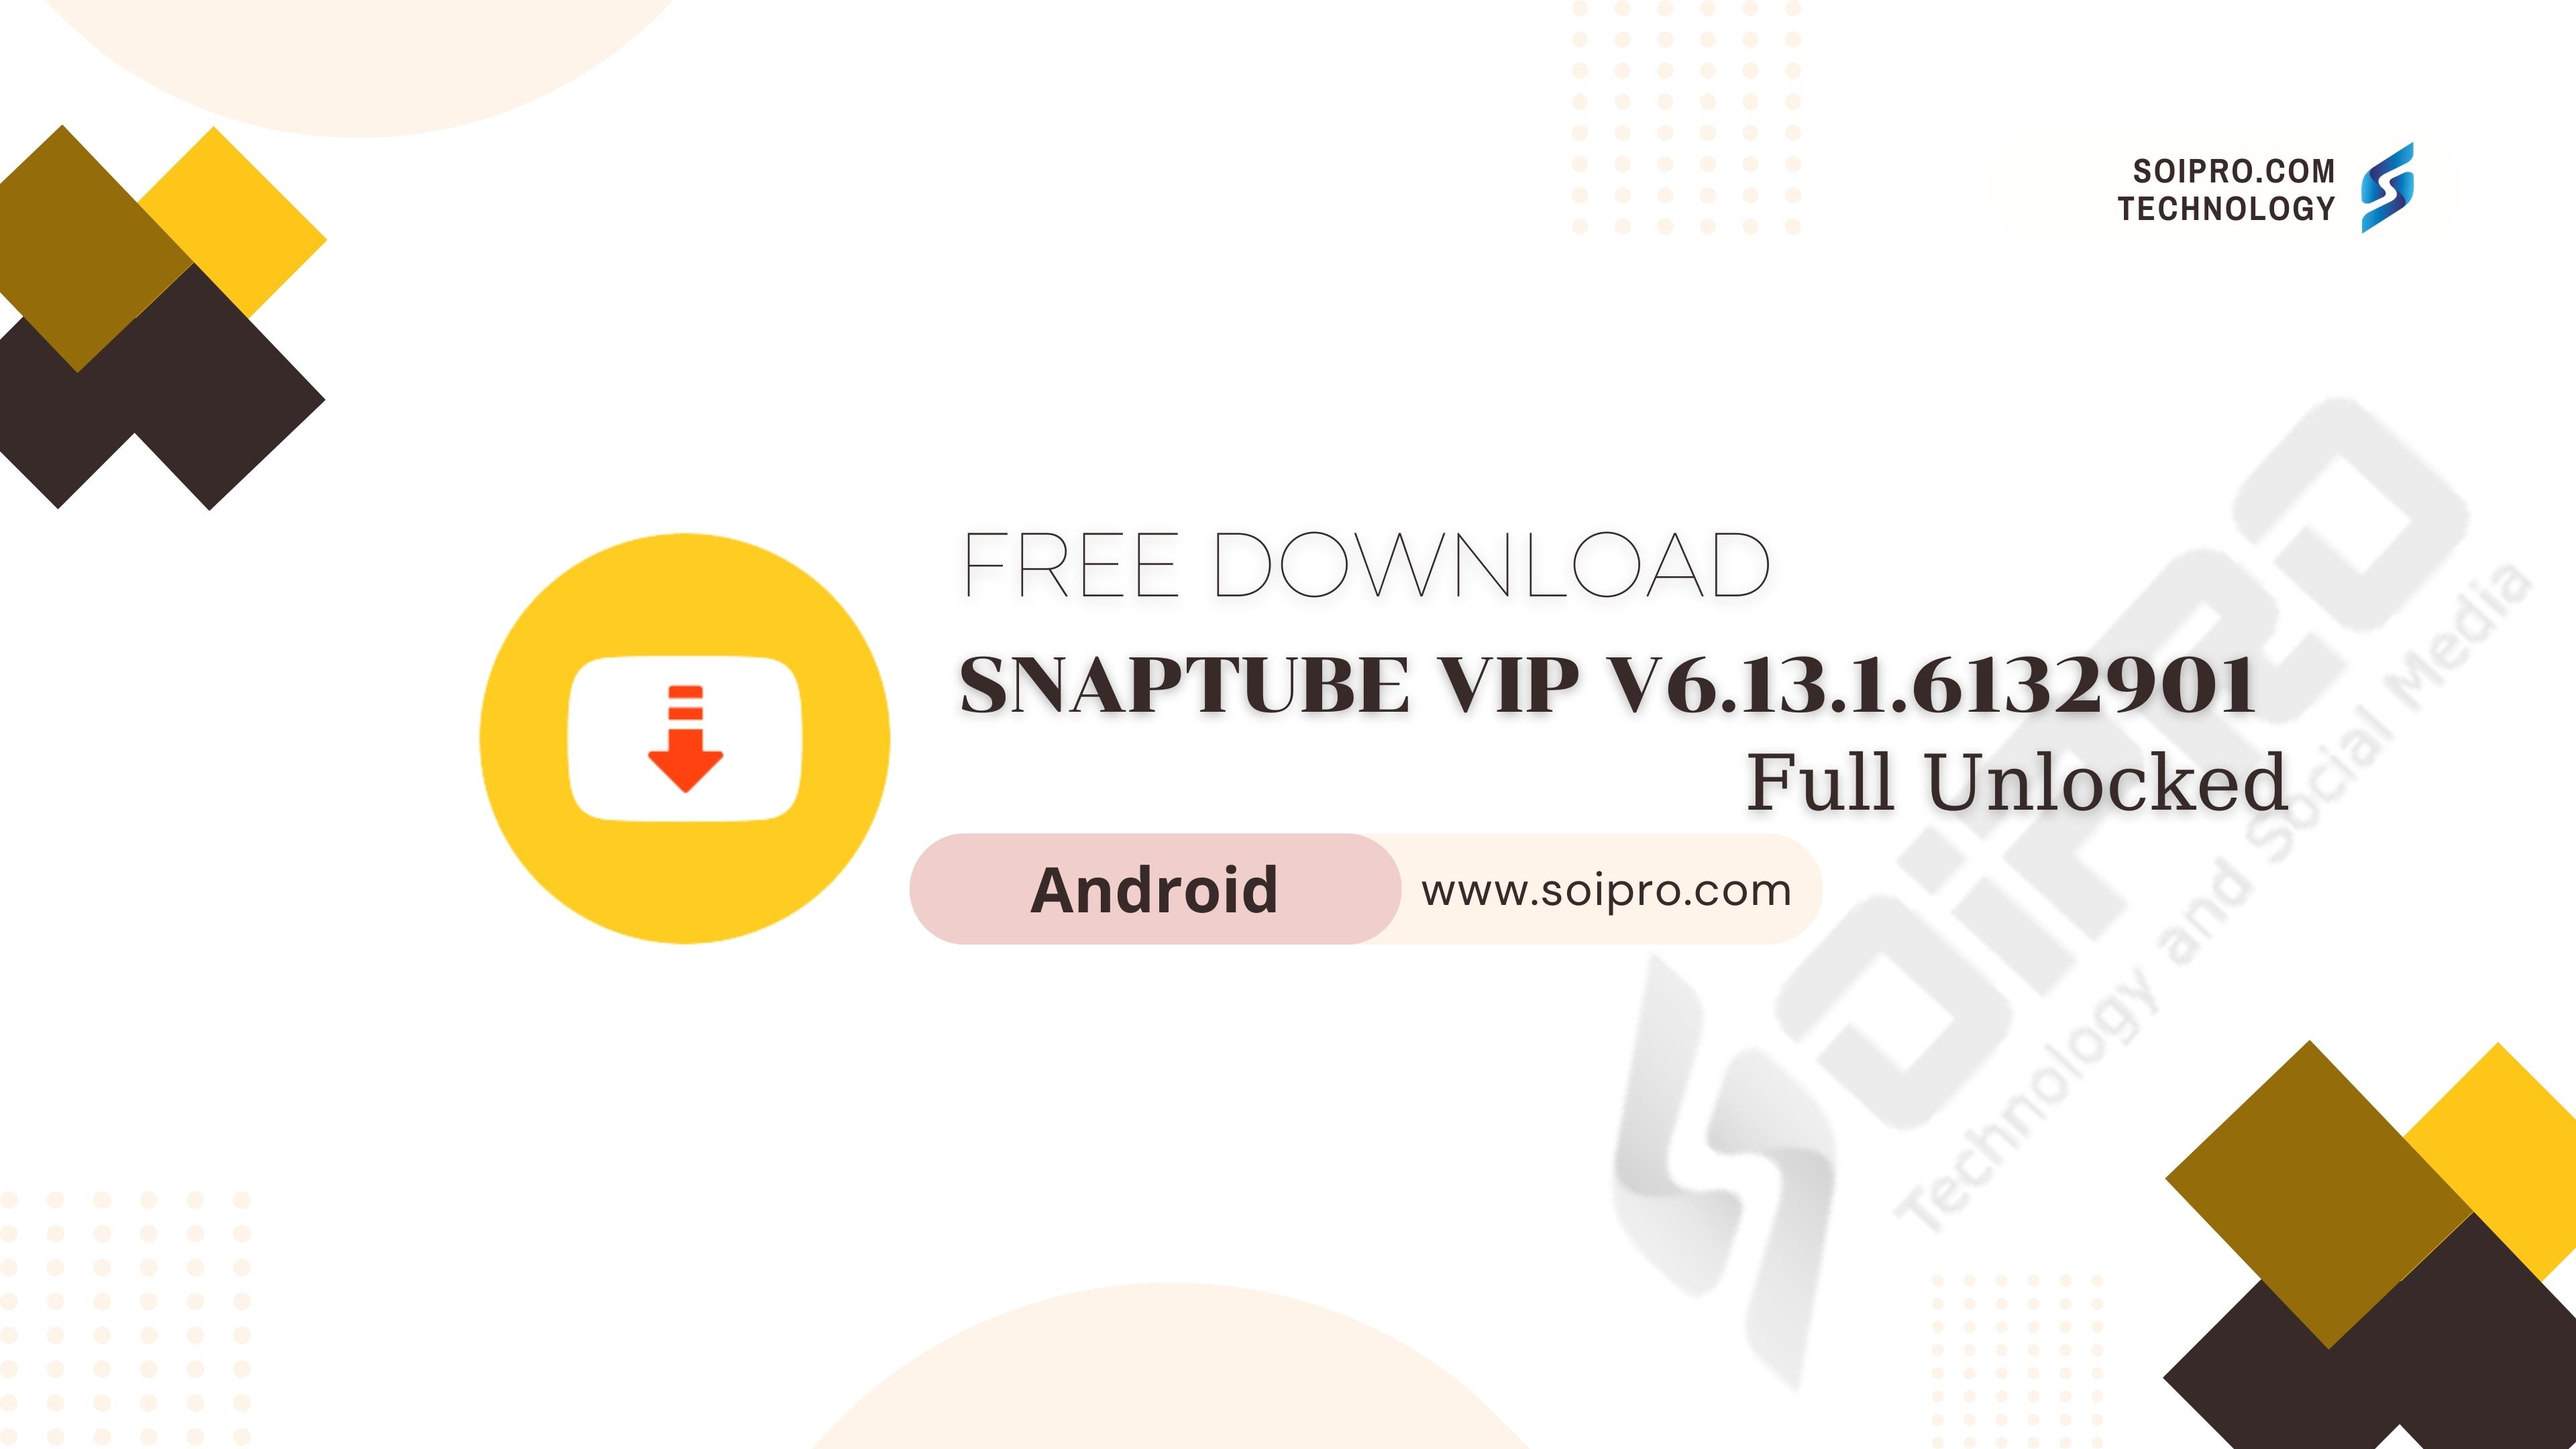 SnapTube VIP v6.13.1.6132901 Full Unlocked